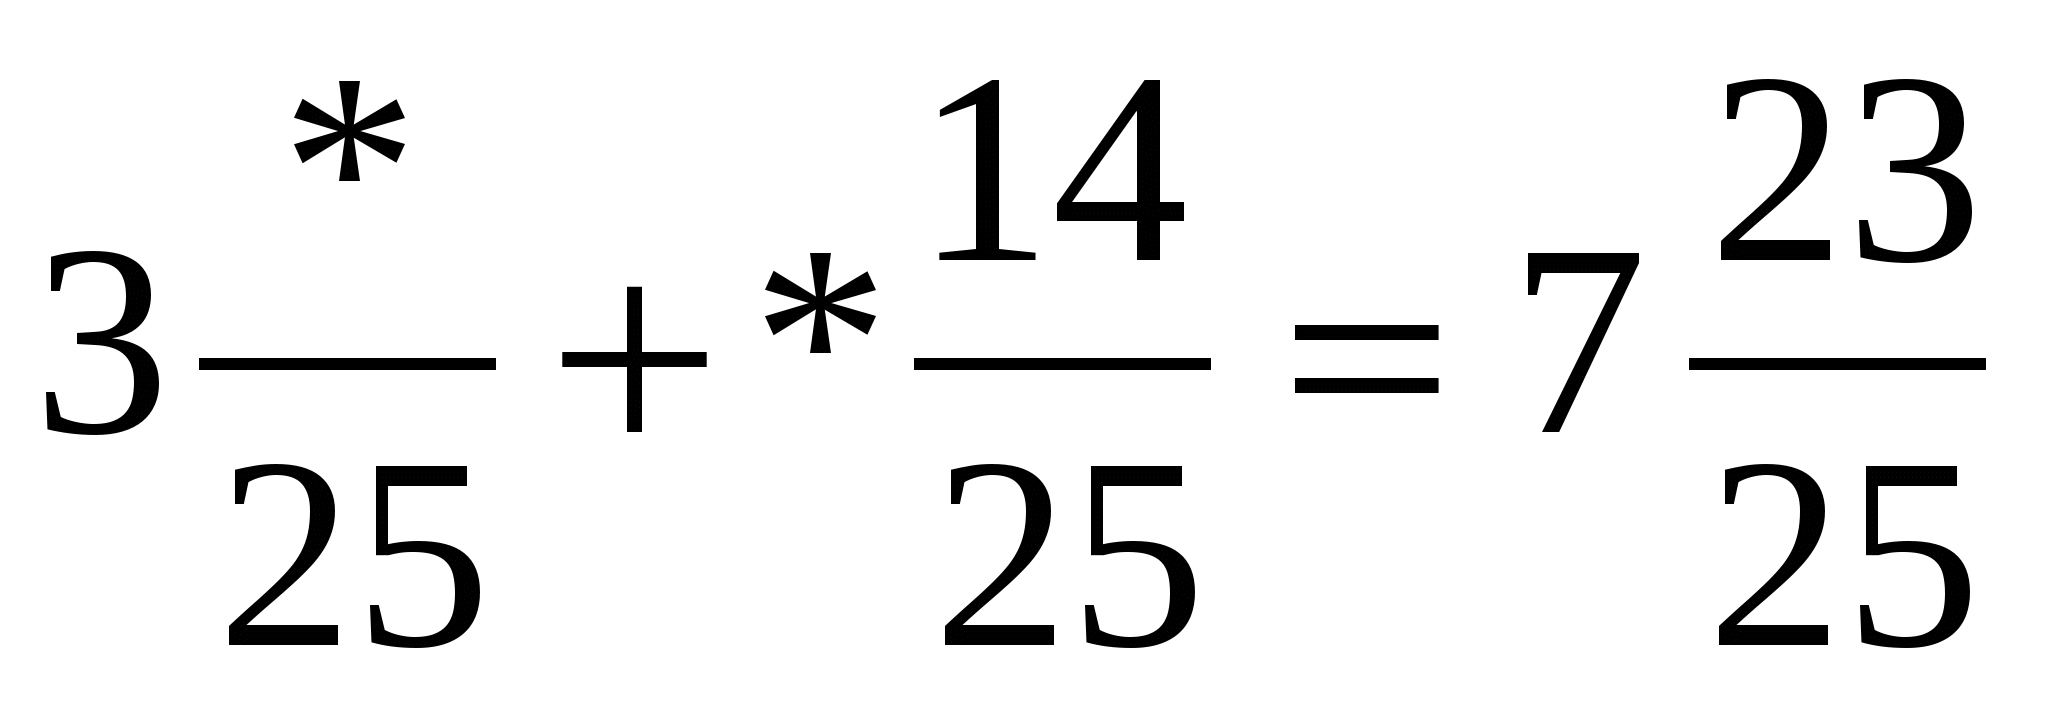 Урок по математике для 5 класса «Сложение смешанных чисел, дробные части которых имеют одинаковые знаменатели»